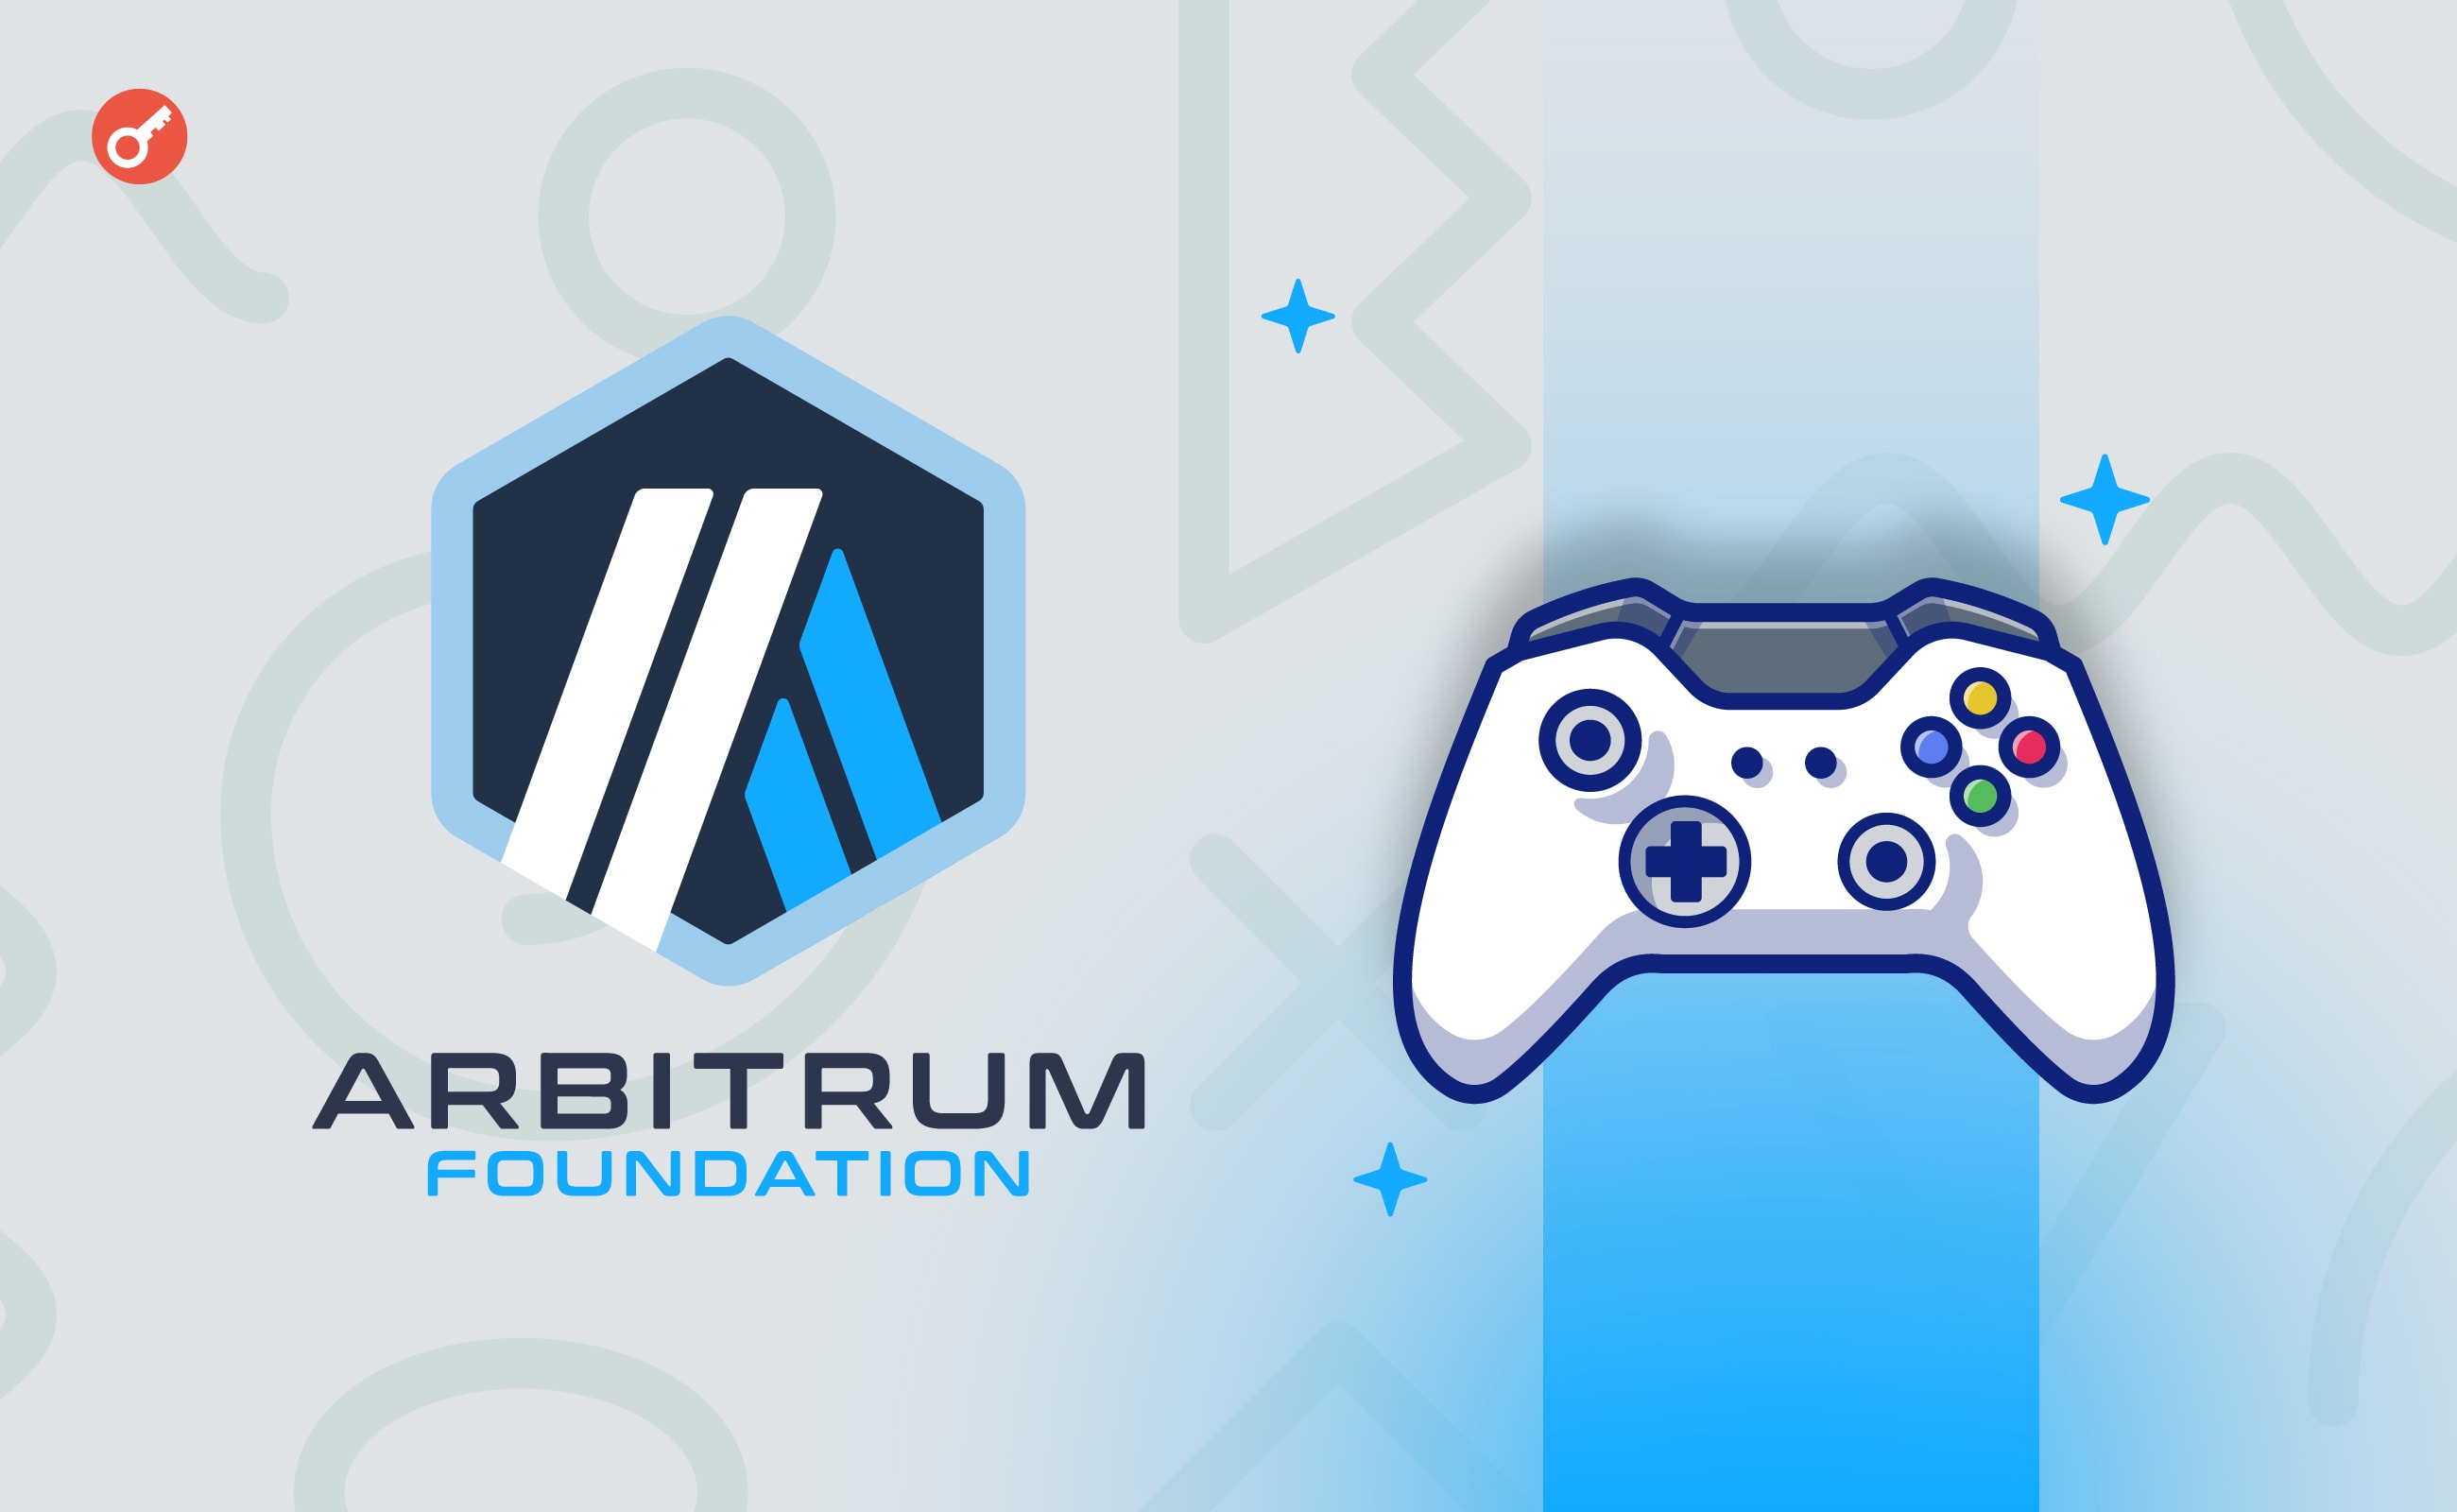 Fundacja Arbitrum zainwestuje 200 milionów ARB w promowanie projektów związanych z grami blockchain. Główny kolaż wiadomości.